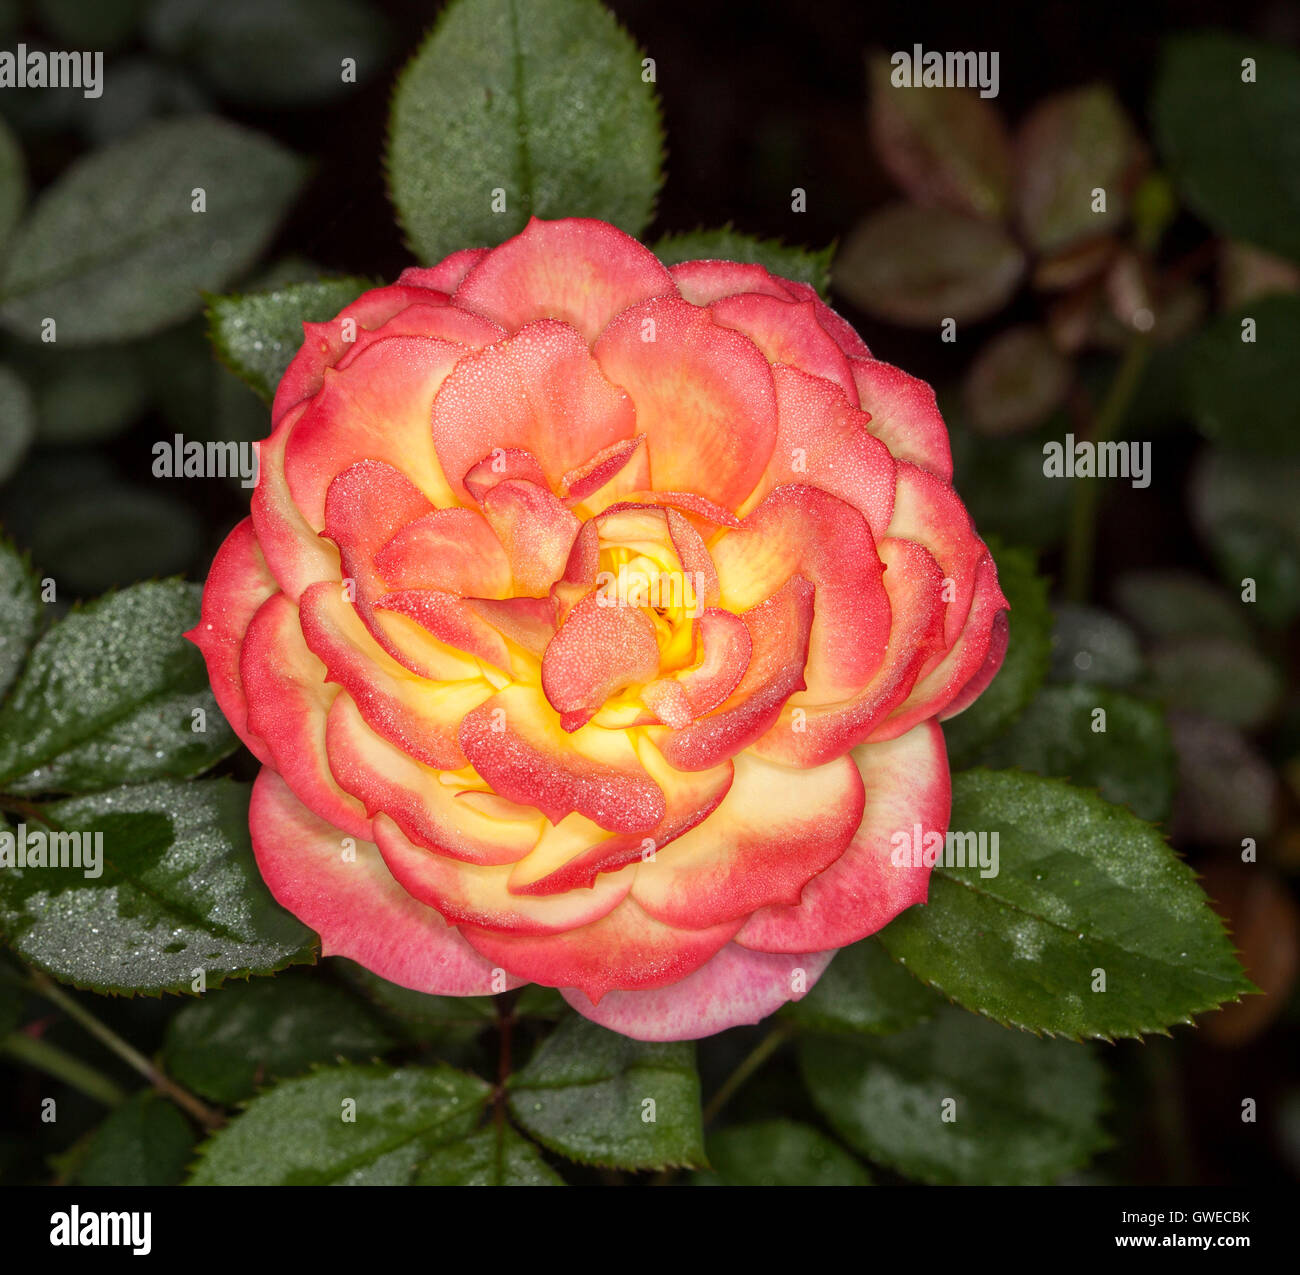 Spektakuläre rote & gelbe Blume & dunkelgrün lässt ungewöhnliche Chamäleon Rose mit Regentropfen auf Blütenblätter & Laub Stockfoto